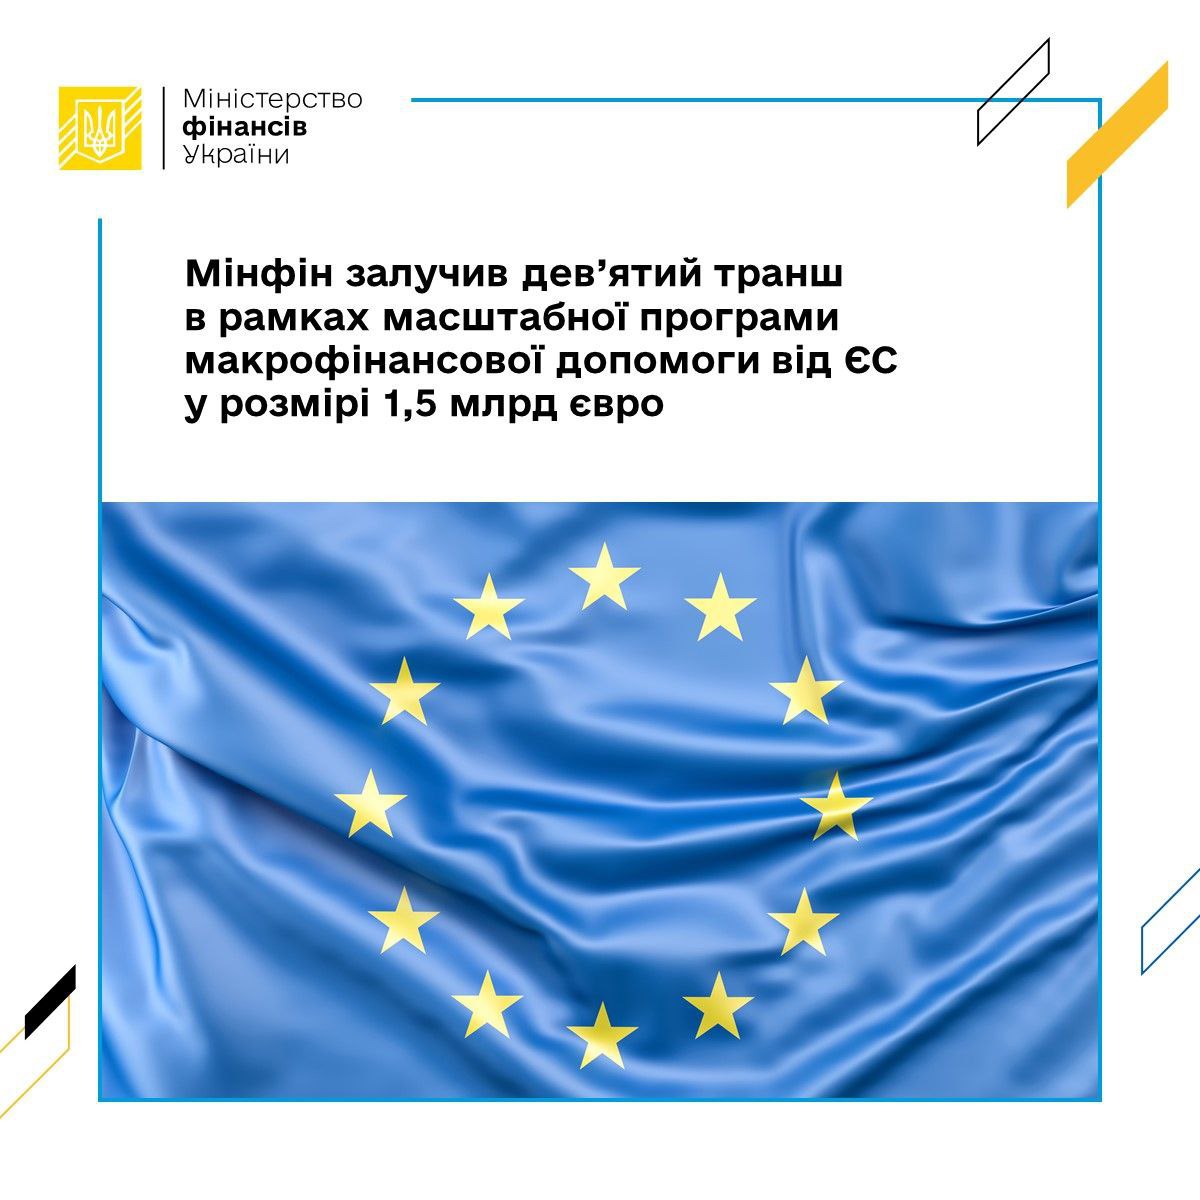 Україна отримала девятий транш макрофінансової допомоги від ЄС у розмірі €1,5 млрд.